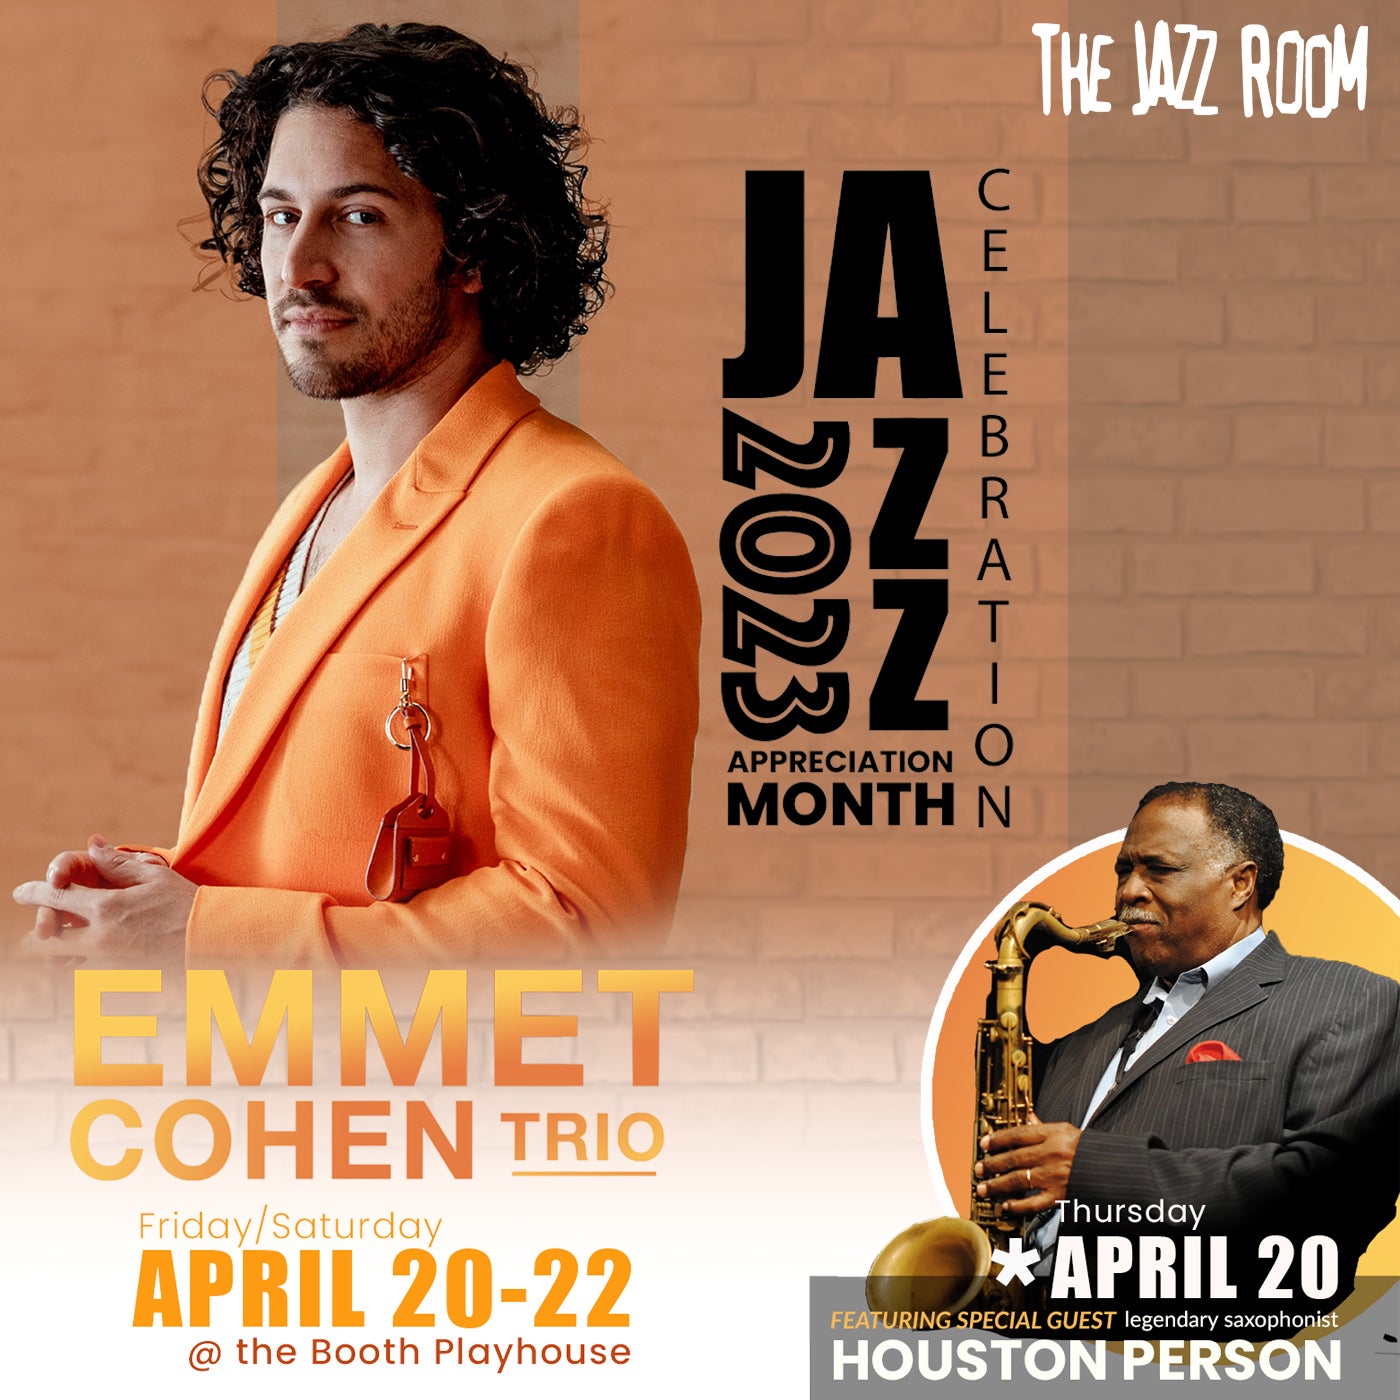 JAZZ ROOM Presents Emmet Cohen Trio